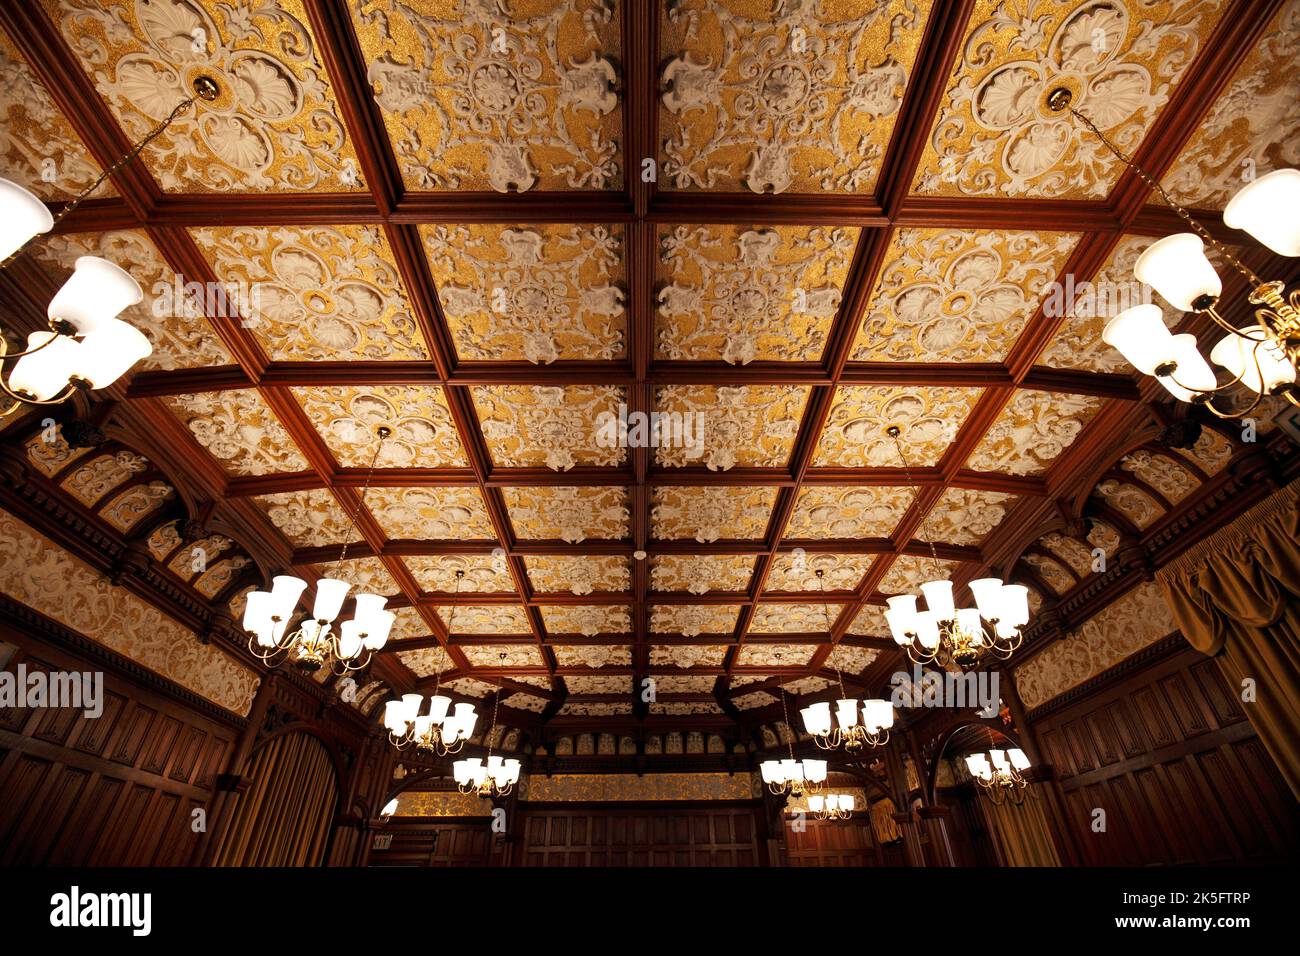 Plafond en plâtre décoratif très orné dans la salle de bal de Bletchley Park. Il abrite MI6 et les codébreakers de la Seconde Guerre mondiale. Banque D'Images